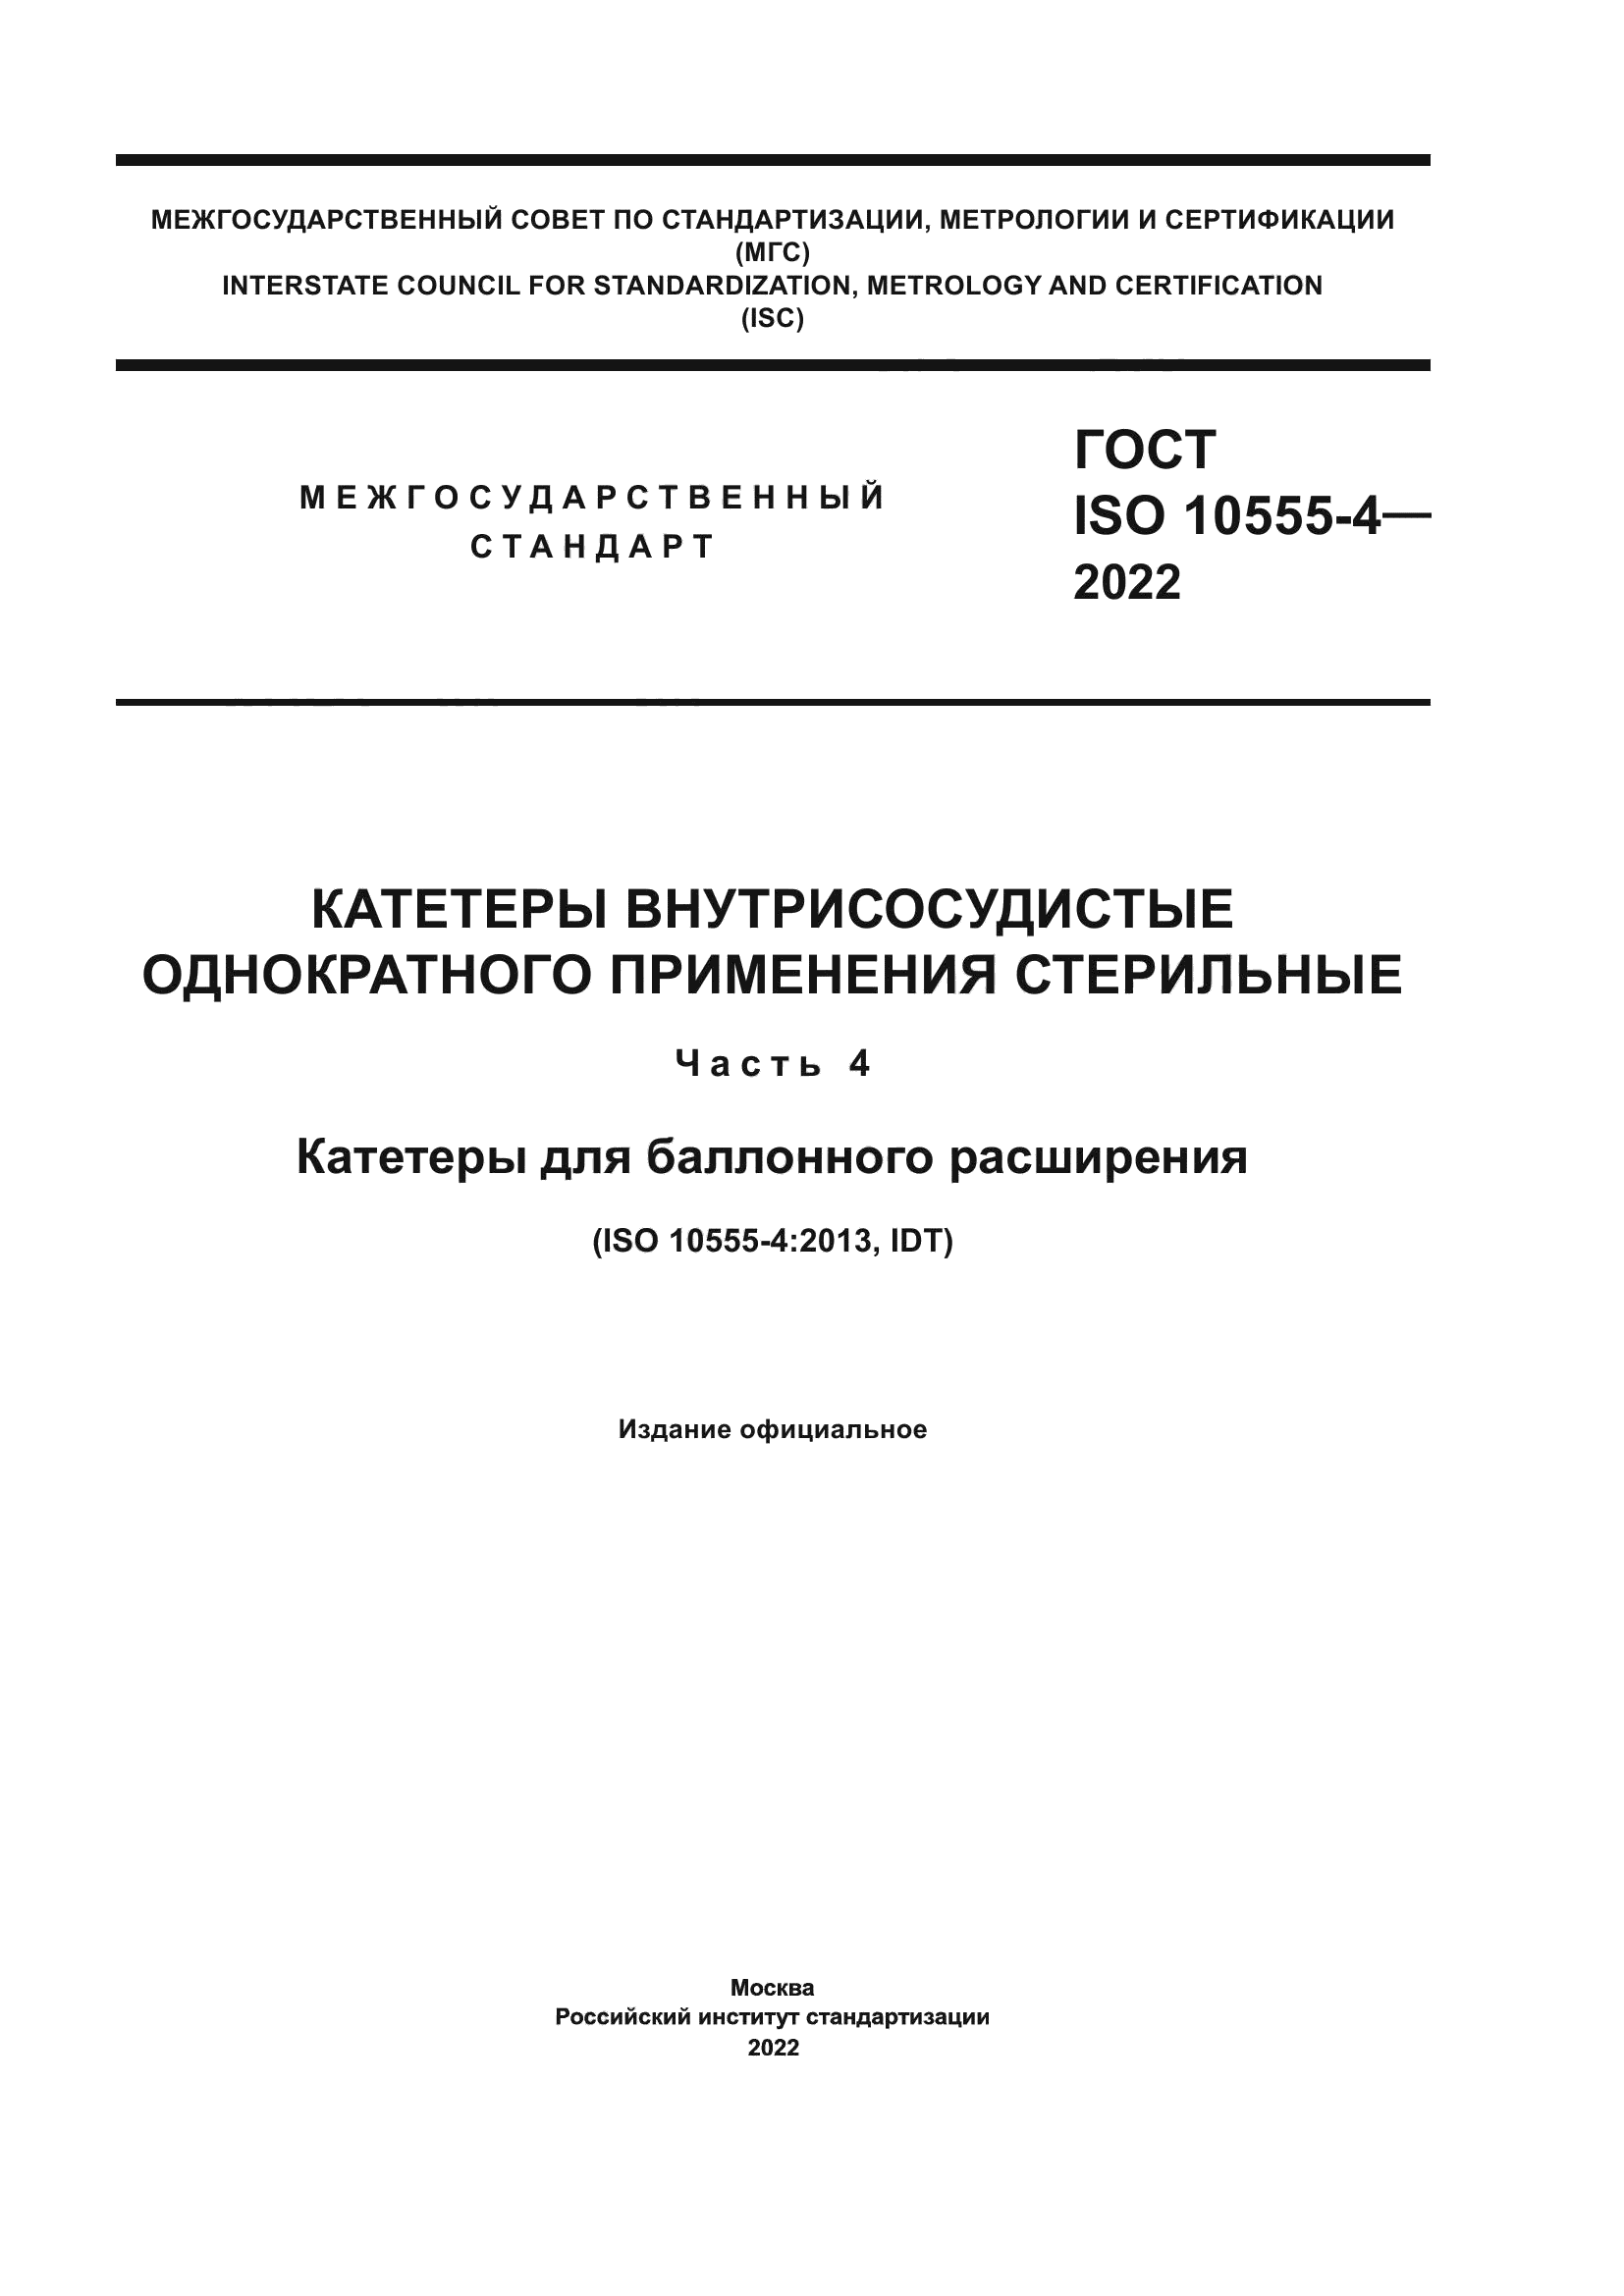 ГОСТ ISO 10555-4-2022